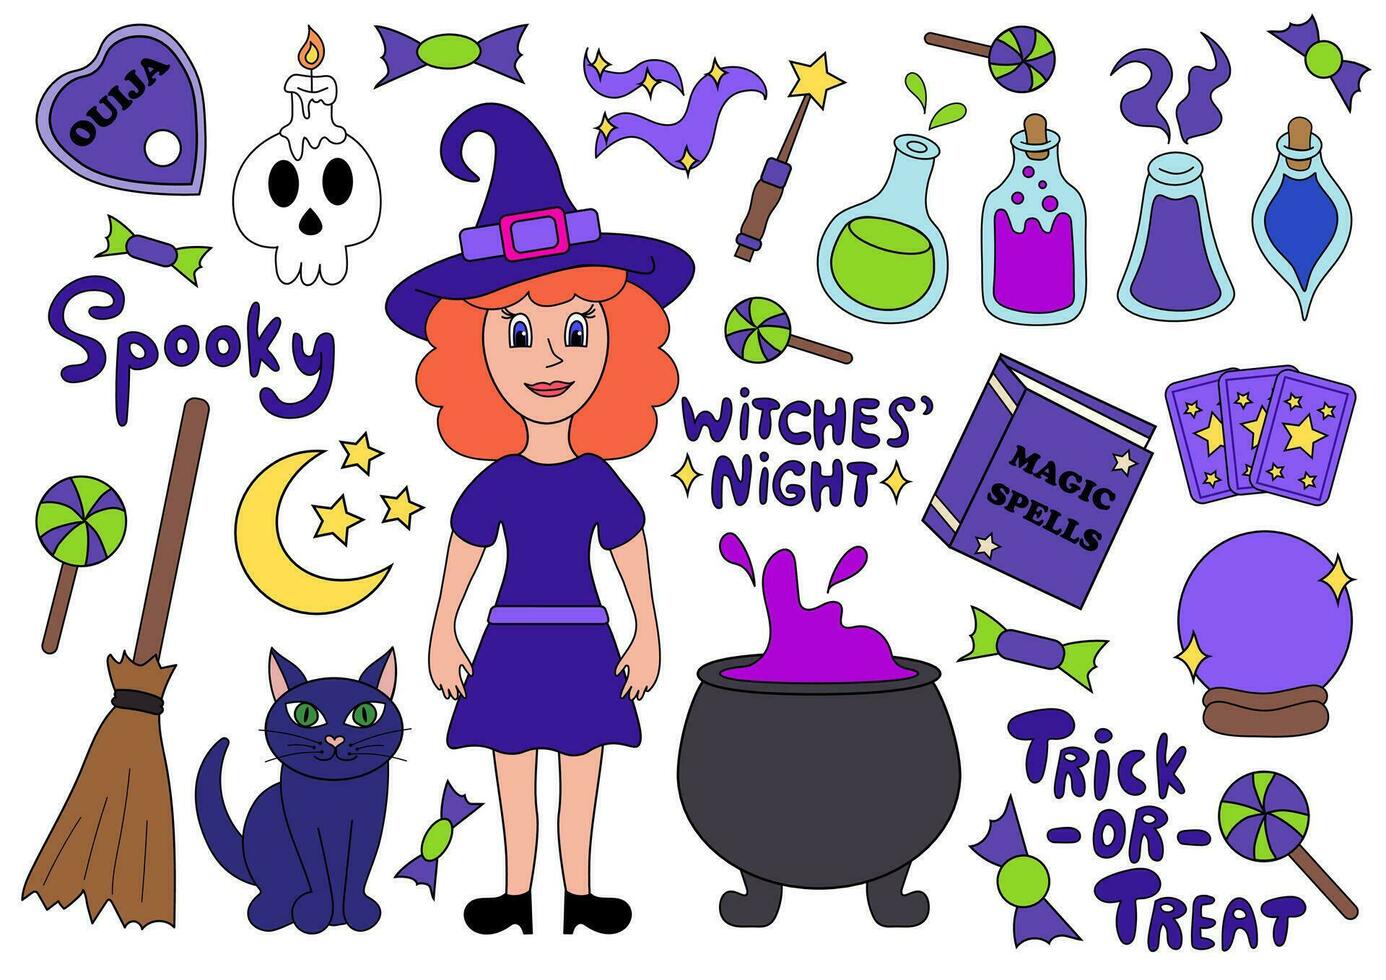 halloween element uppsättning häxa, katt, kittel, förgifta flaskor, ouija, magi bok, tarot, magi boll, kvastskaft, skalle, ljus, magi trollstav. text text lura eller behandla, läskigt, häxor natt. vektor